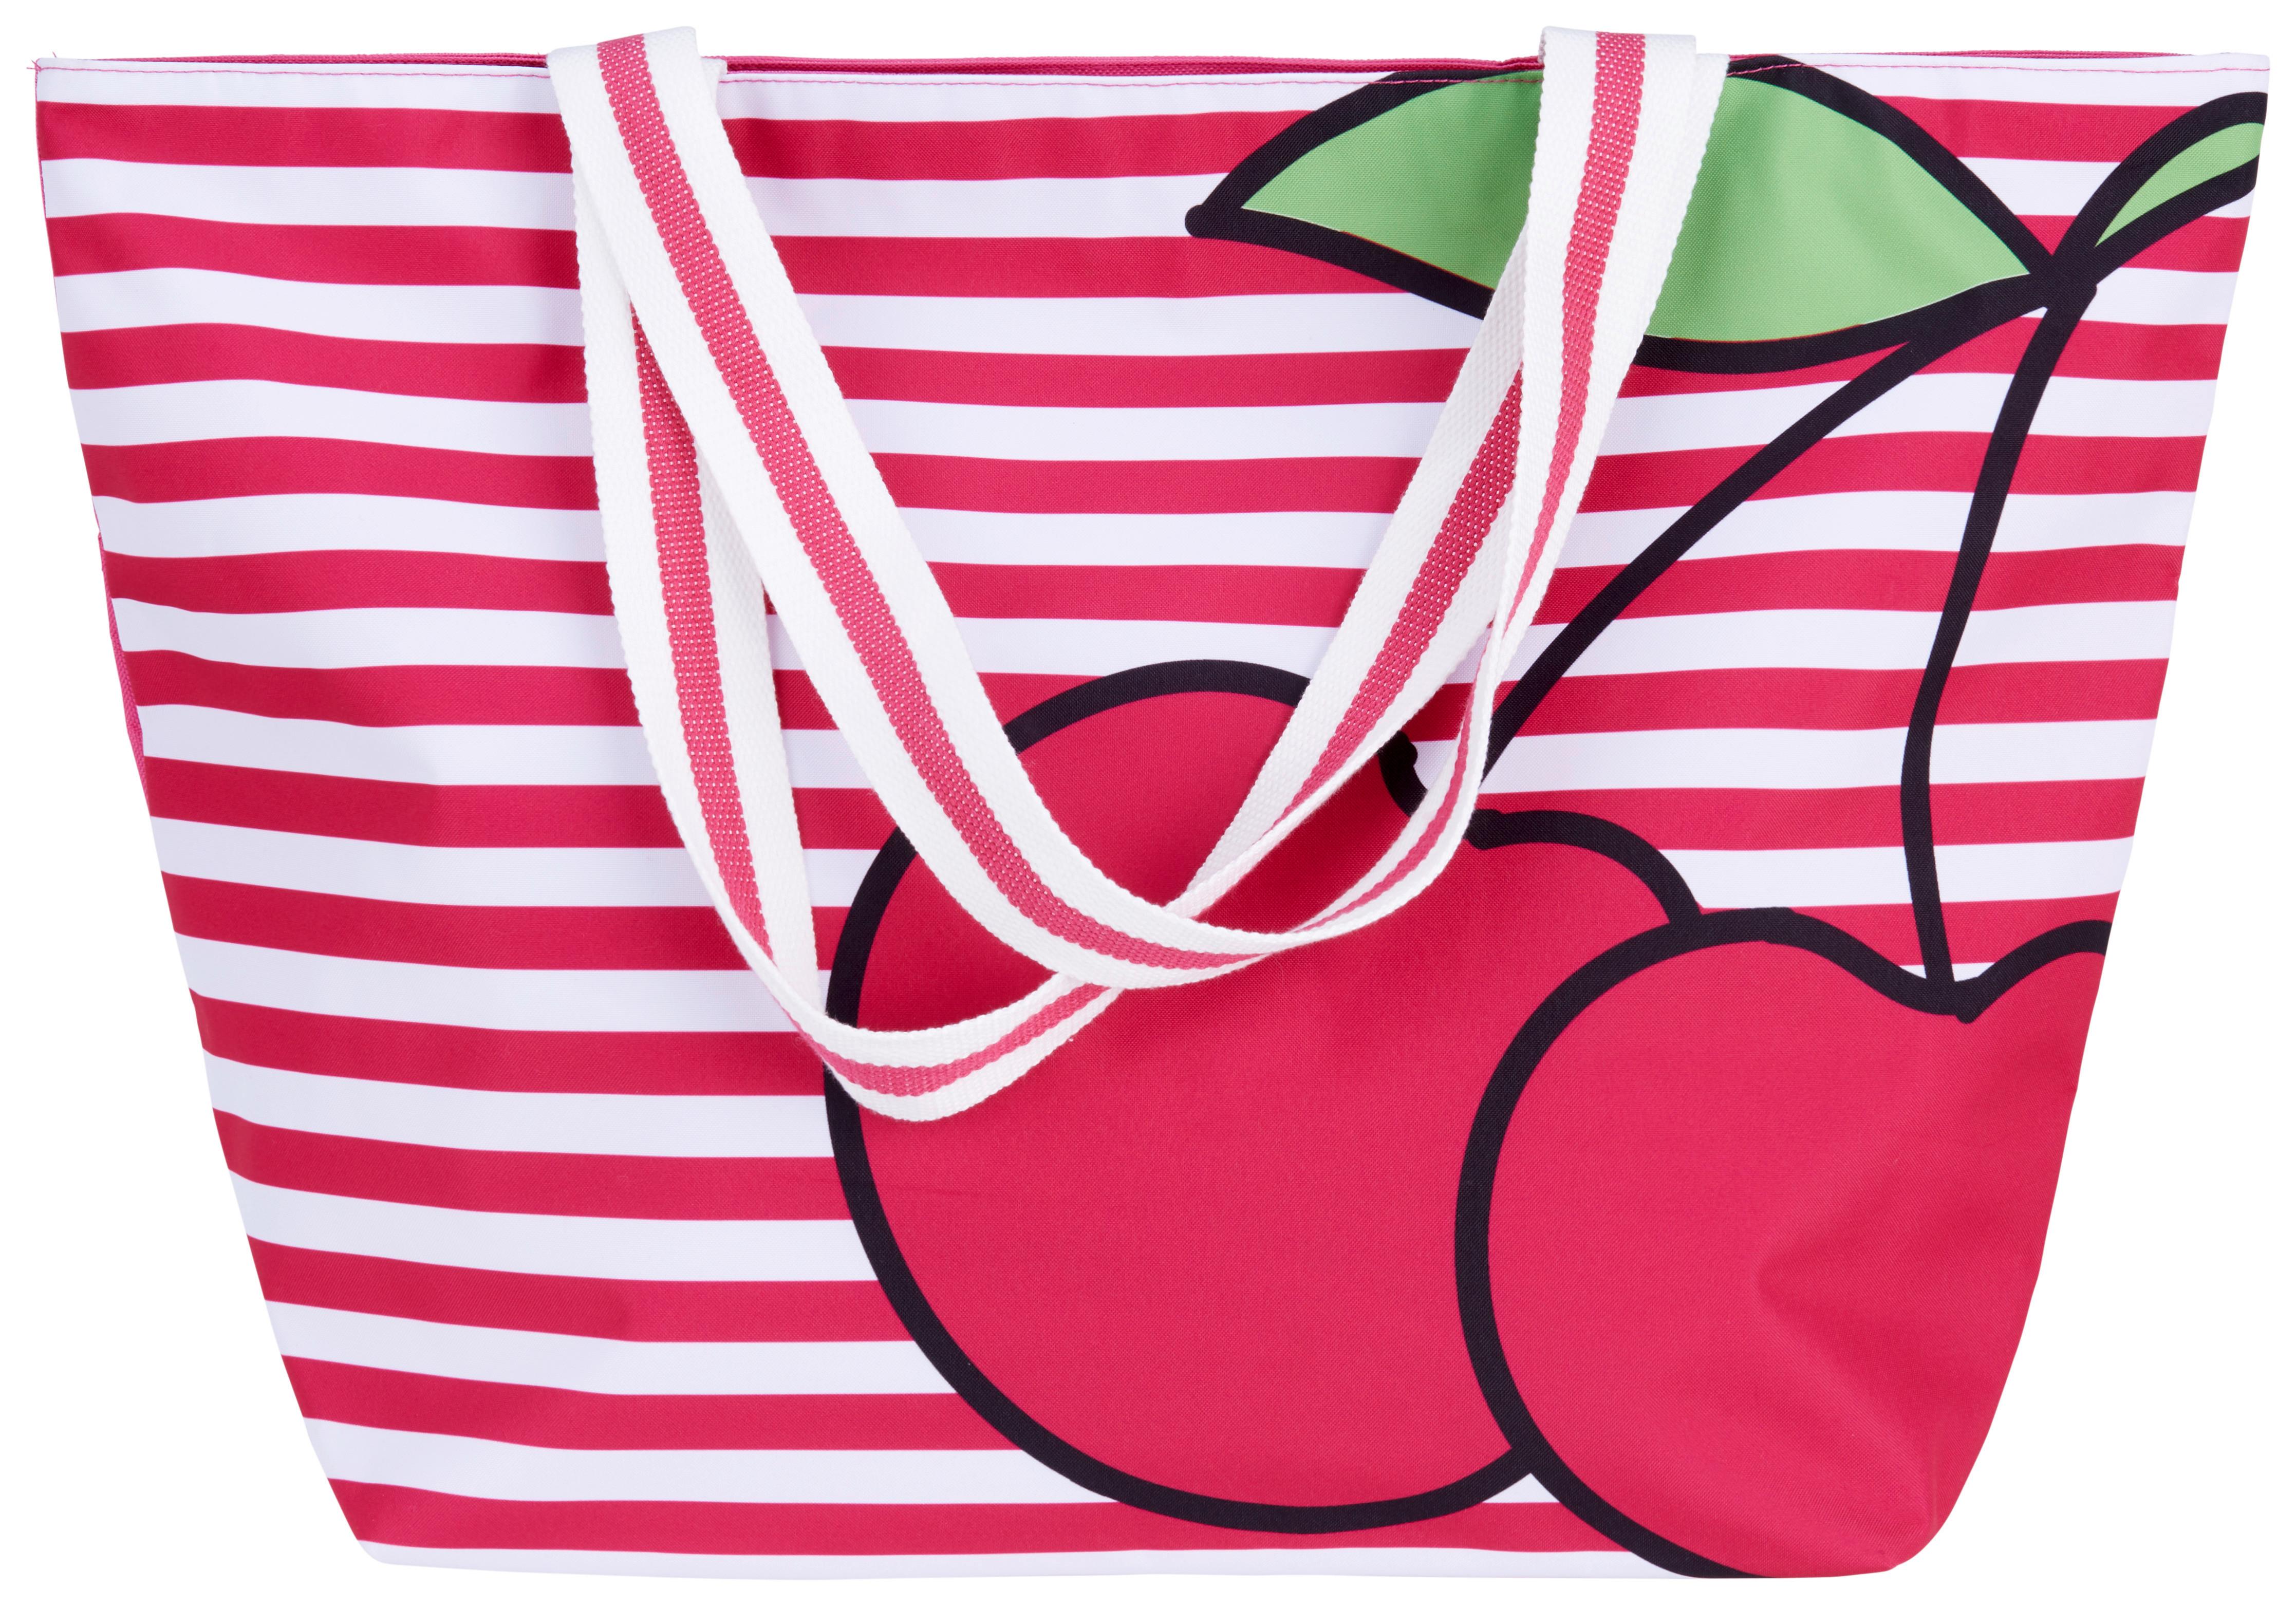 torba plażowa CELINE - jaskrawy róż/zielony, tkanina (58/40/20cm) - Modern Living